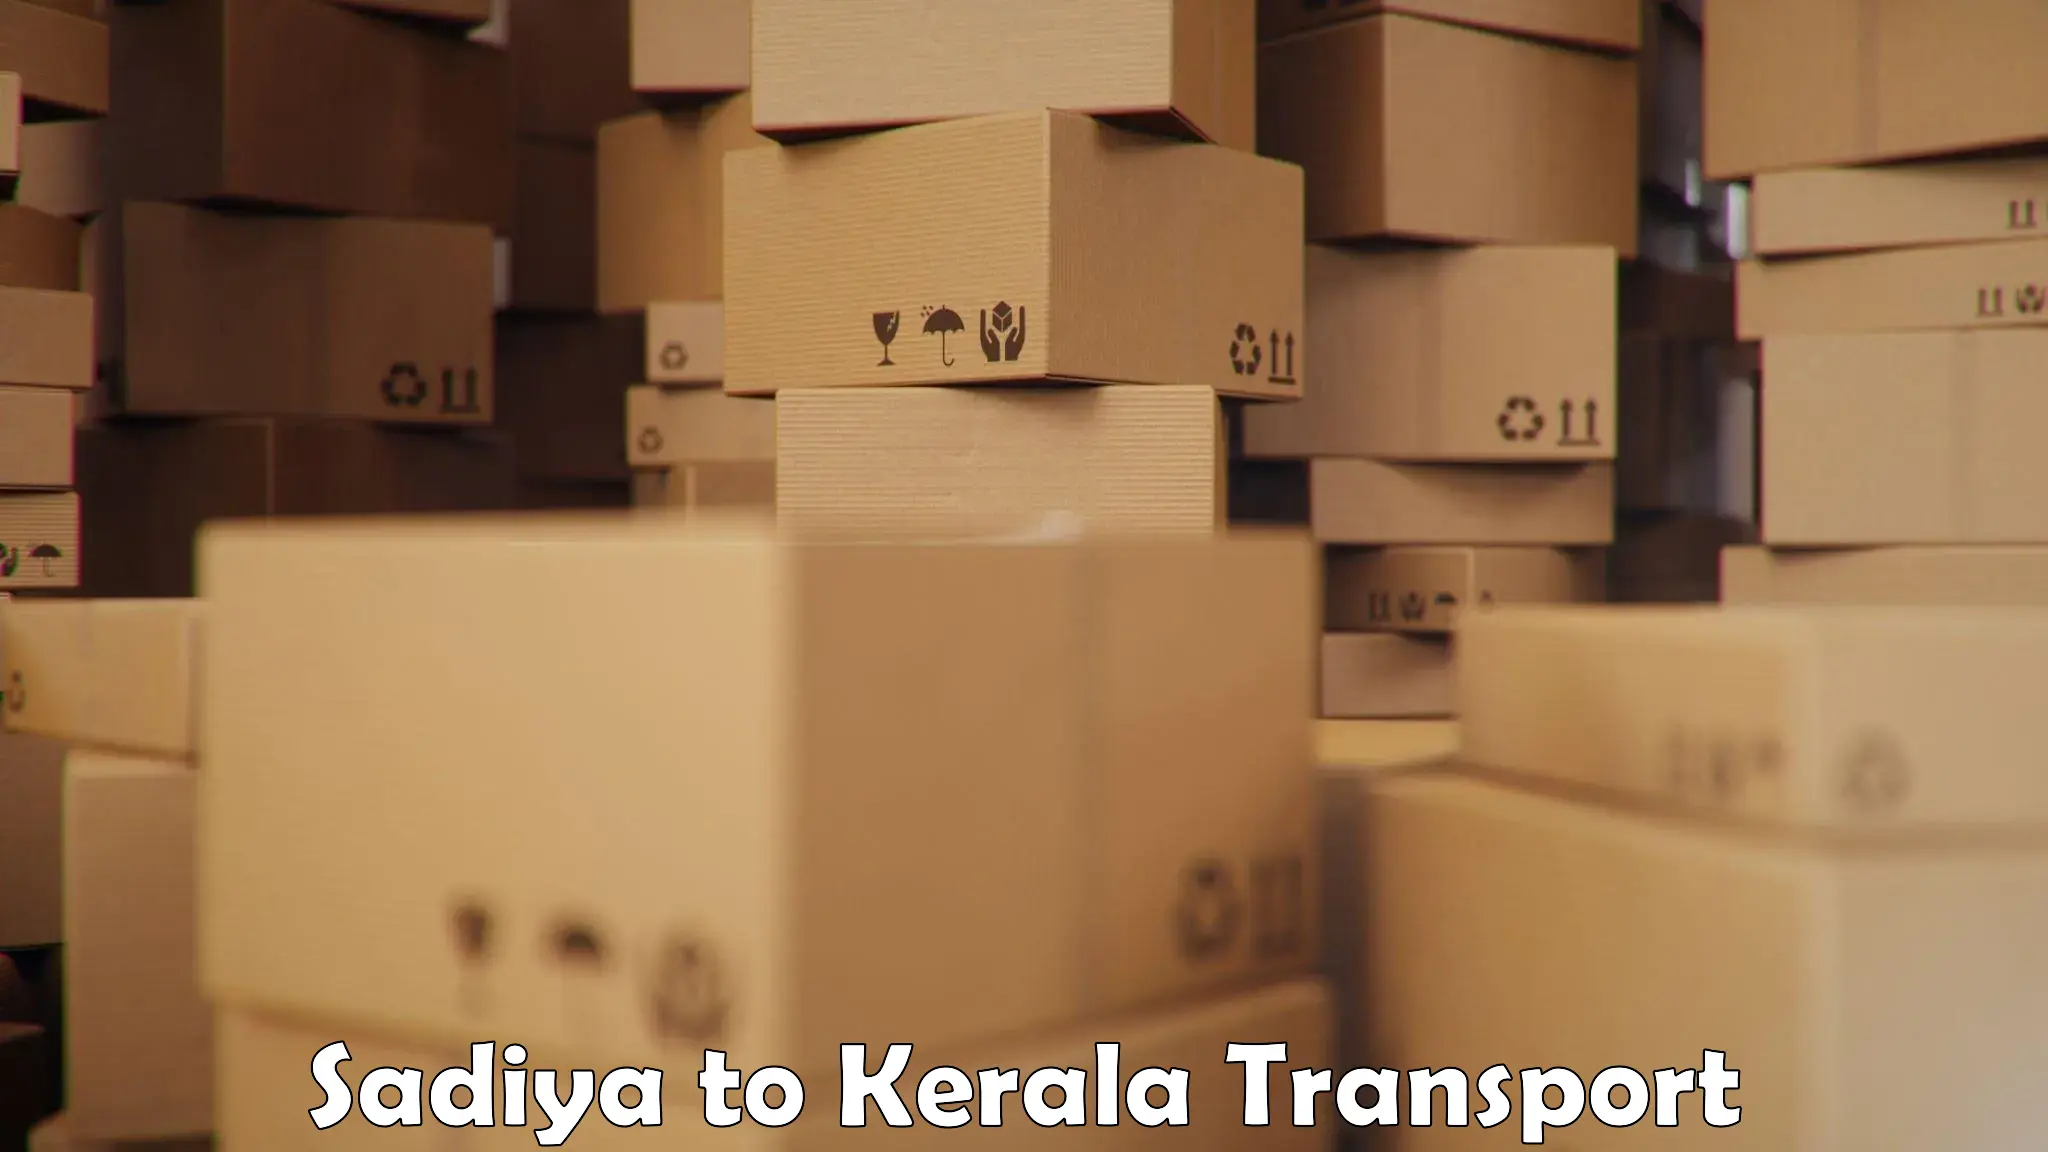 Air freight transport services Sadiya to Kerala